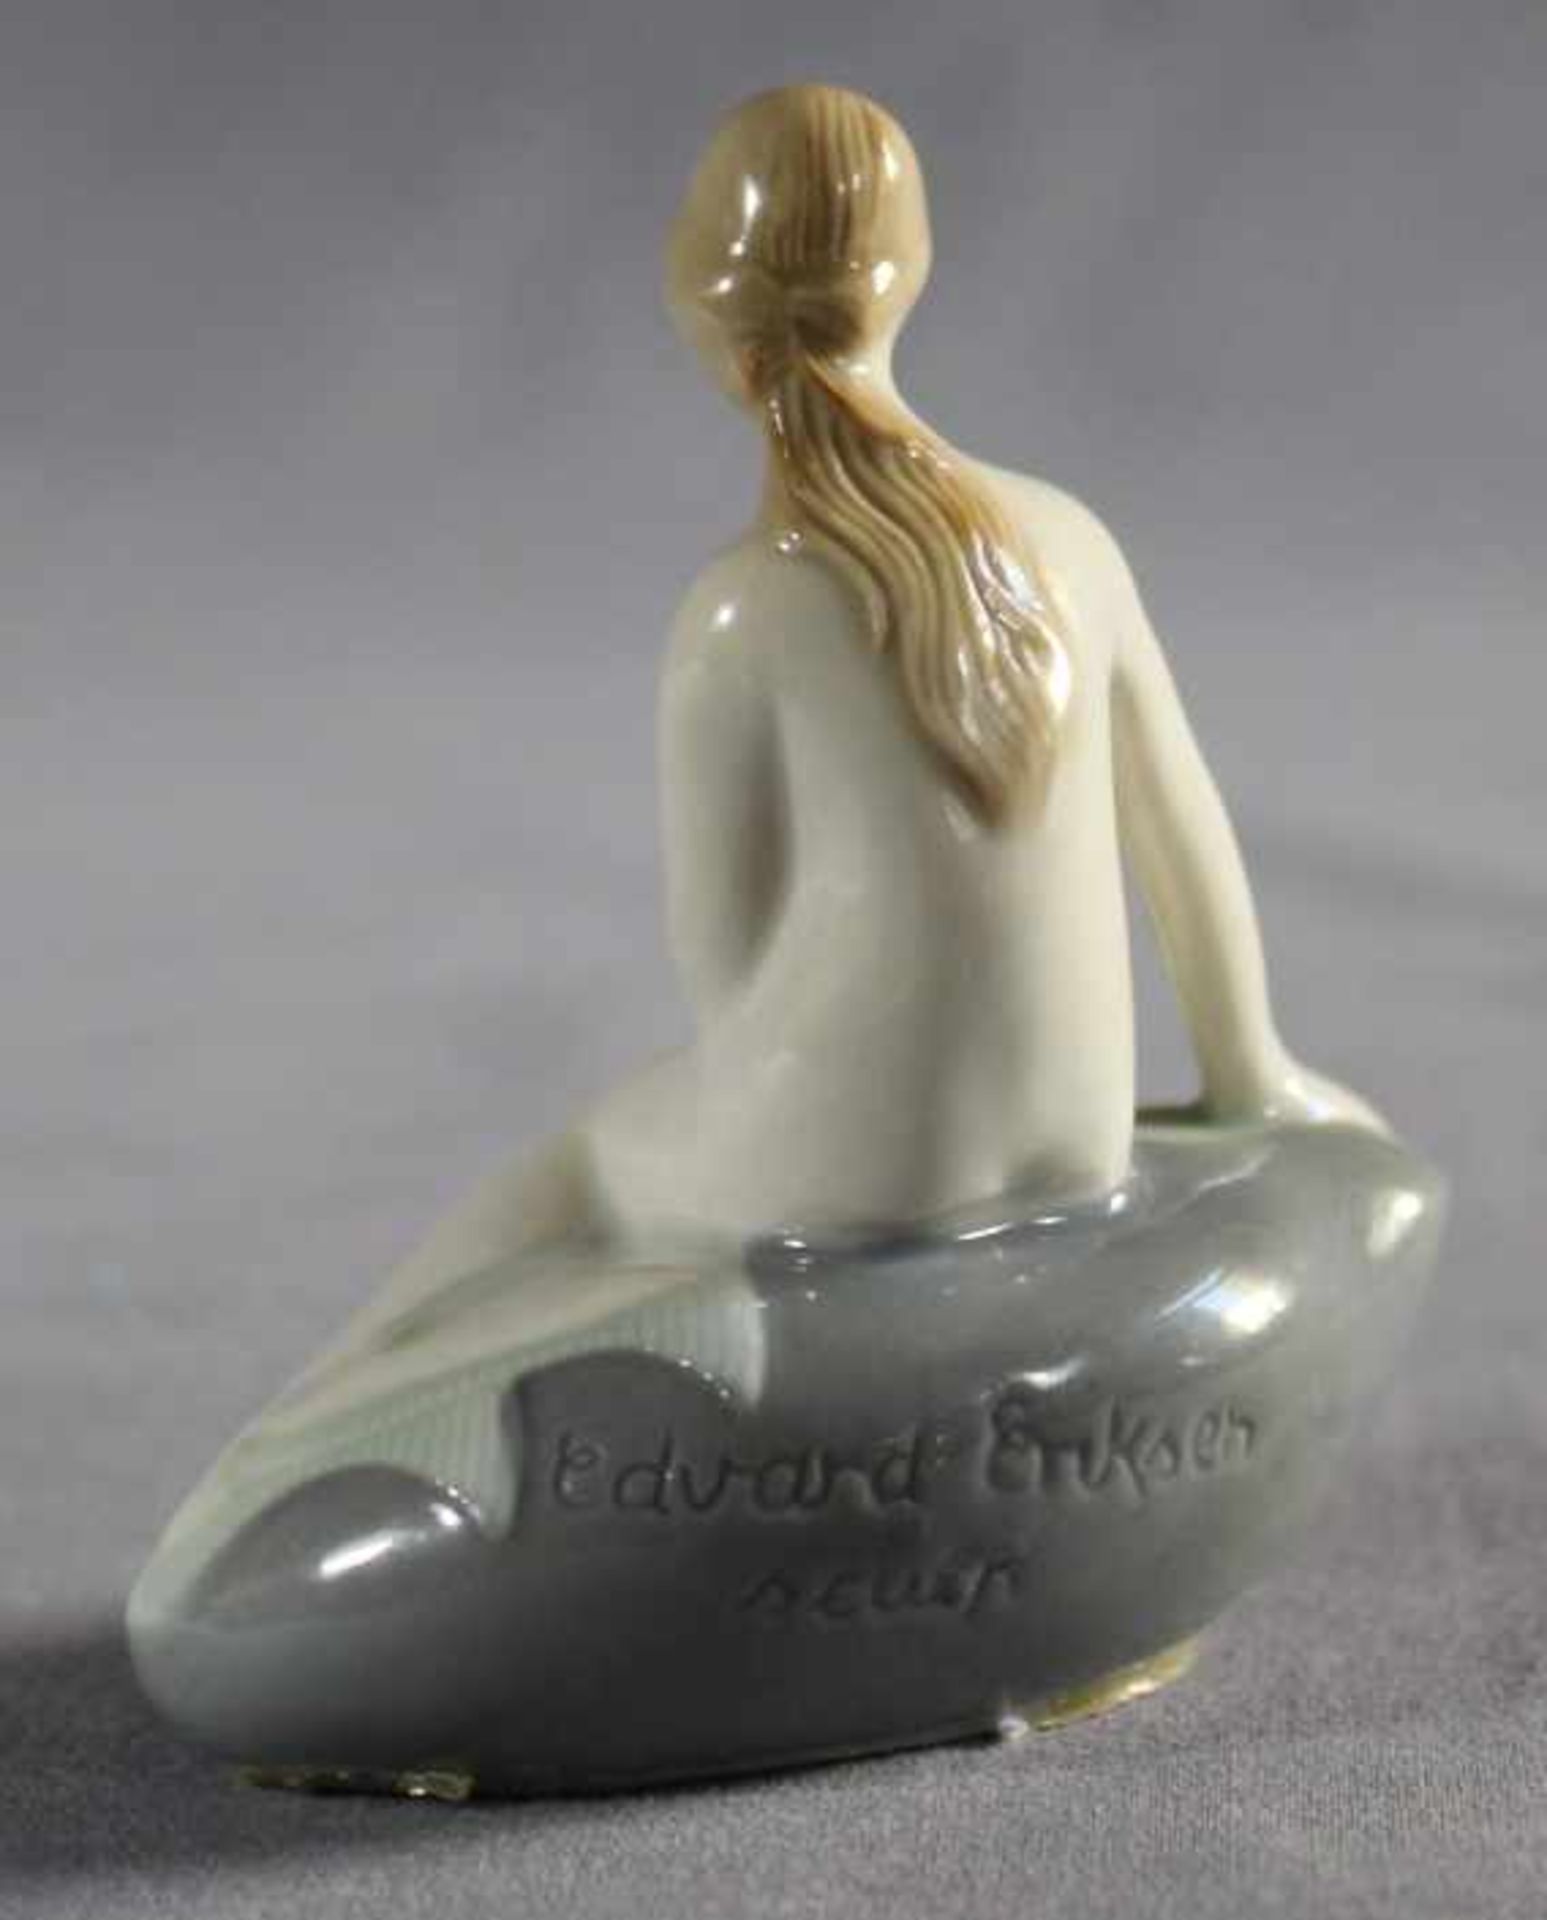 kleine Porzellanfigur "Meerjungfrau", rückseitig signiert Edvard Erikson sculp, dänischer - Bild 2 aus 2